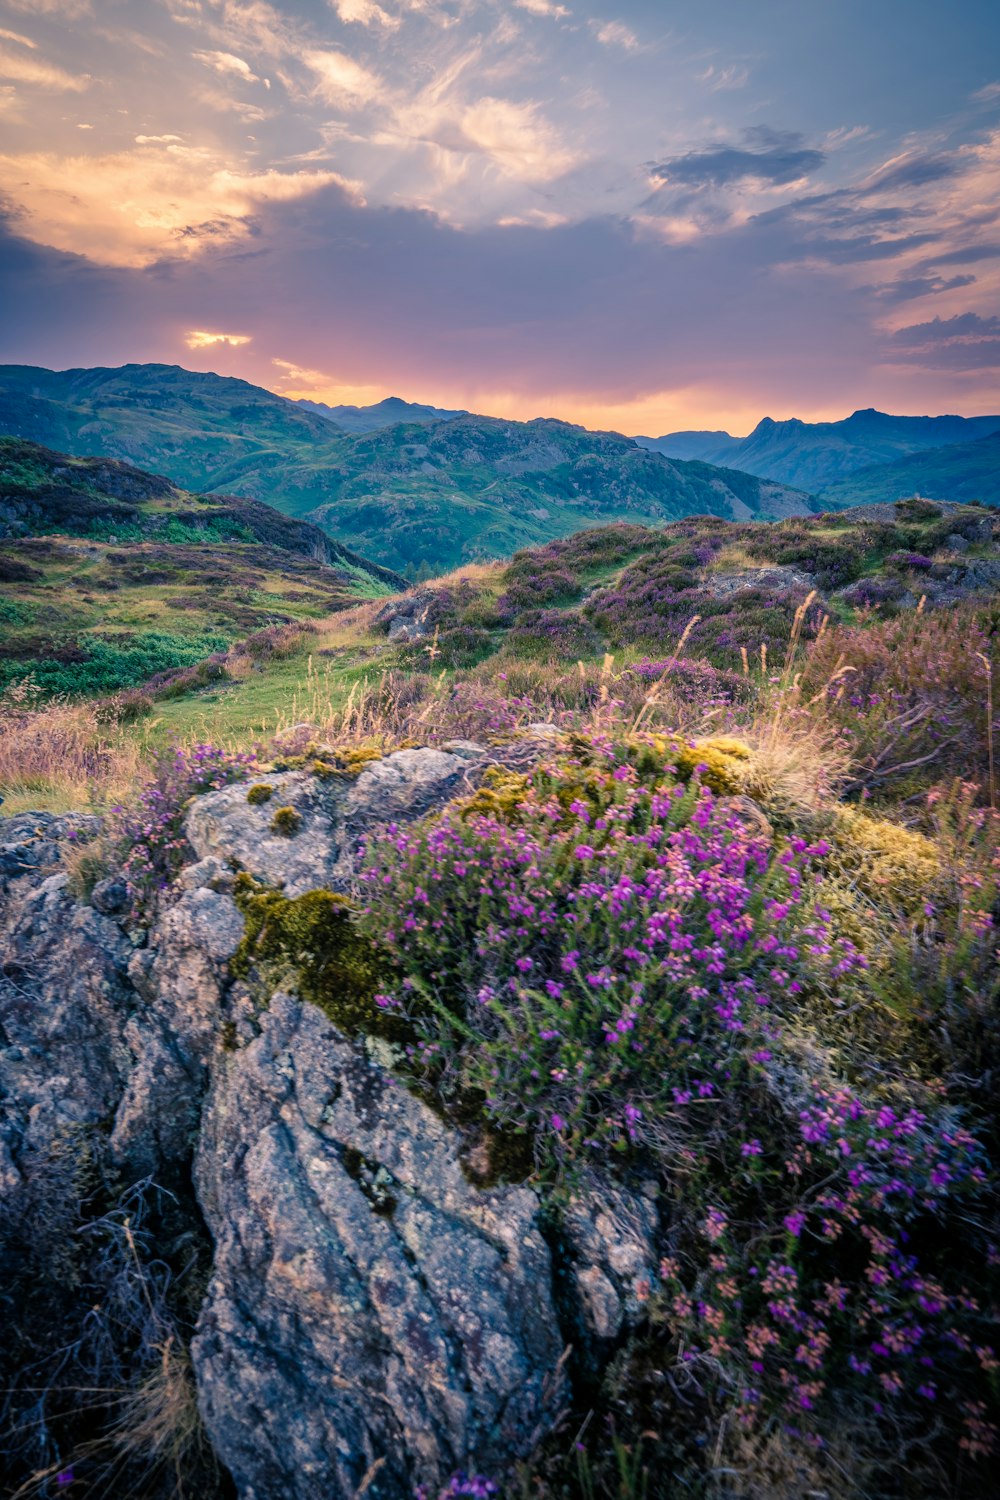 a rocky hillside with purple flowers